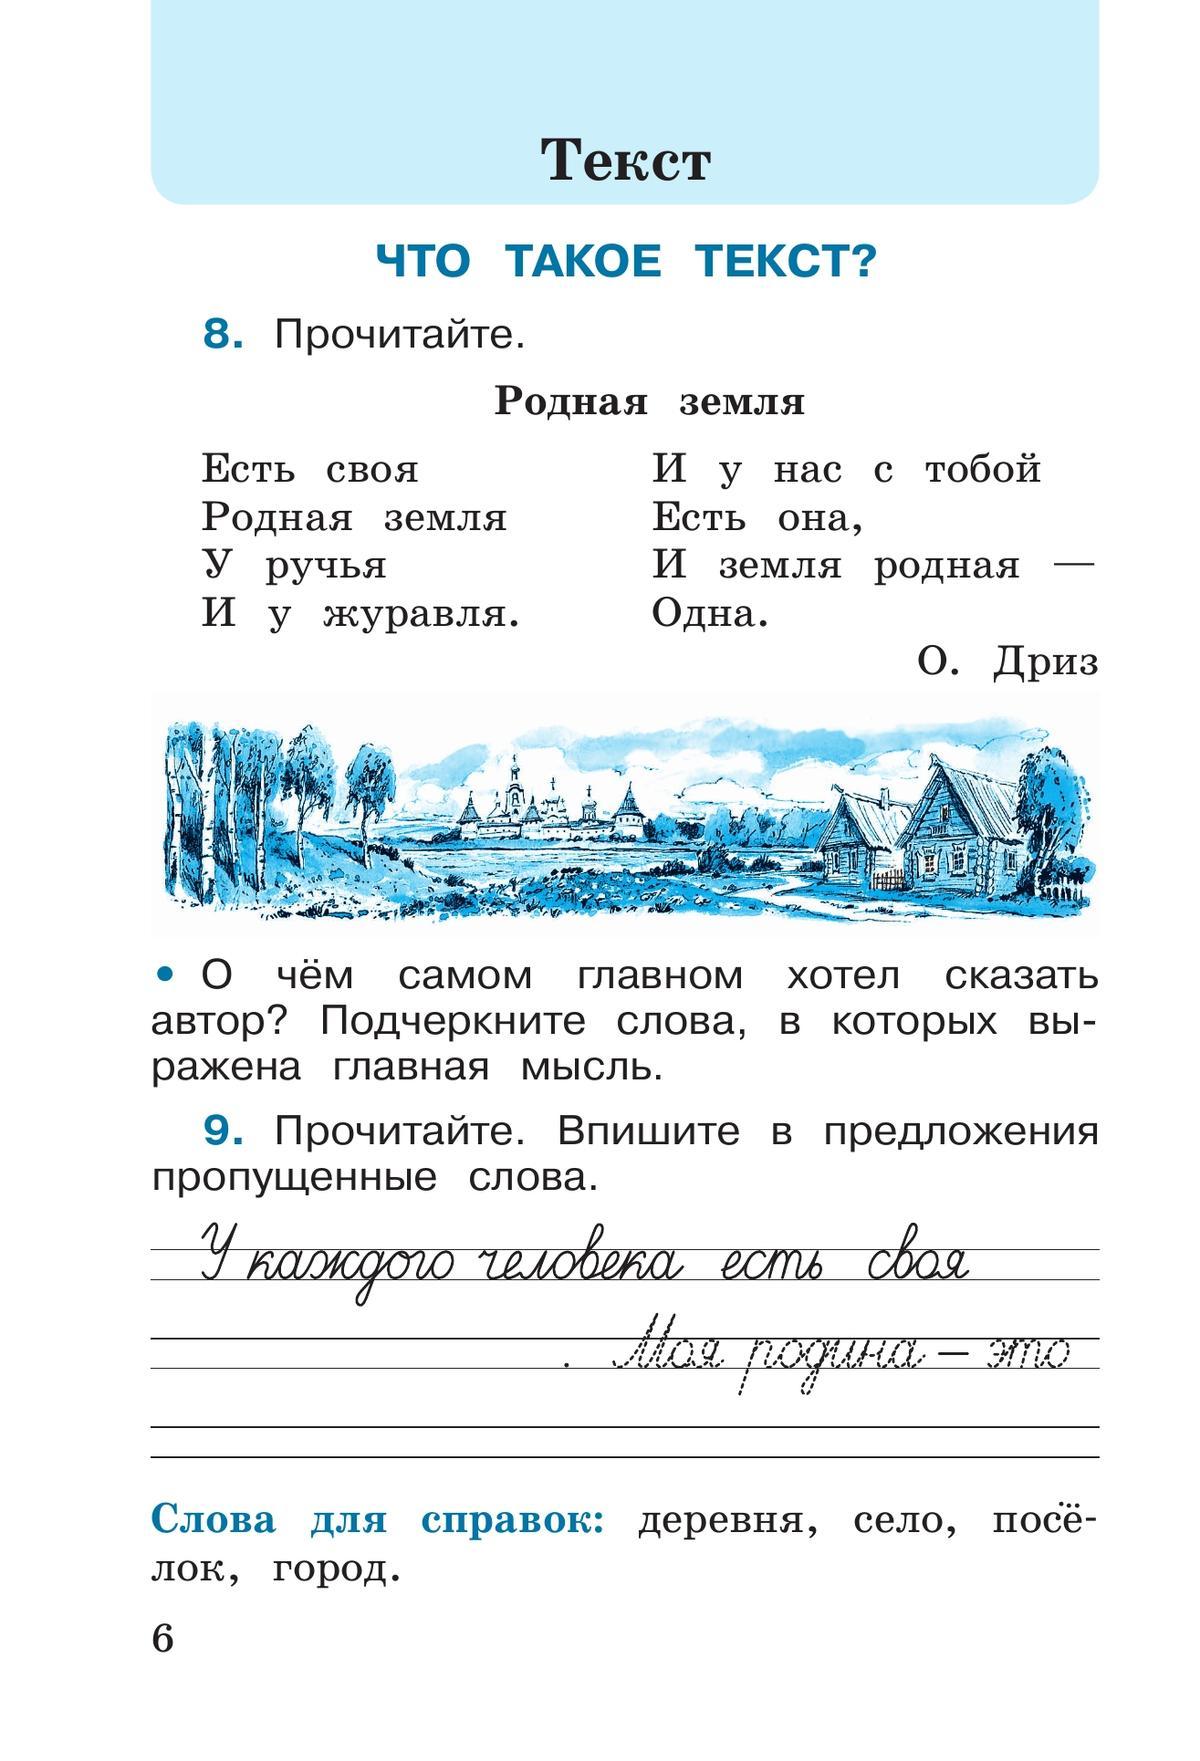 Русский язык. Рабочая тетрадь. 2 класс. В 2 частях. Часть 1 4